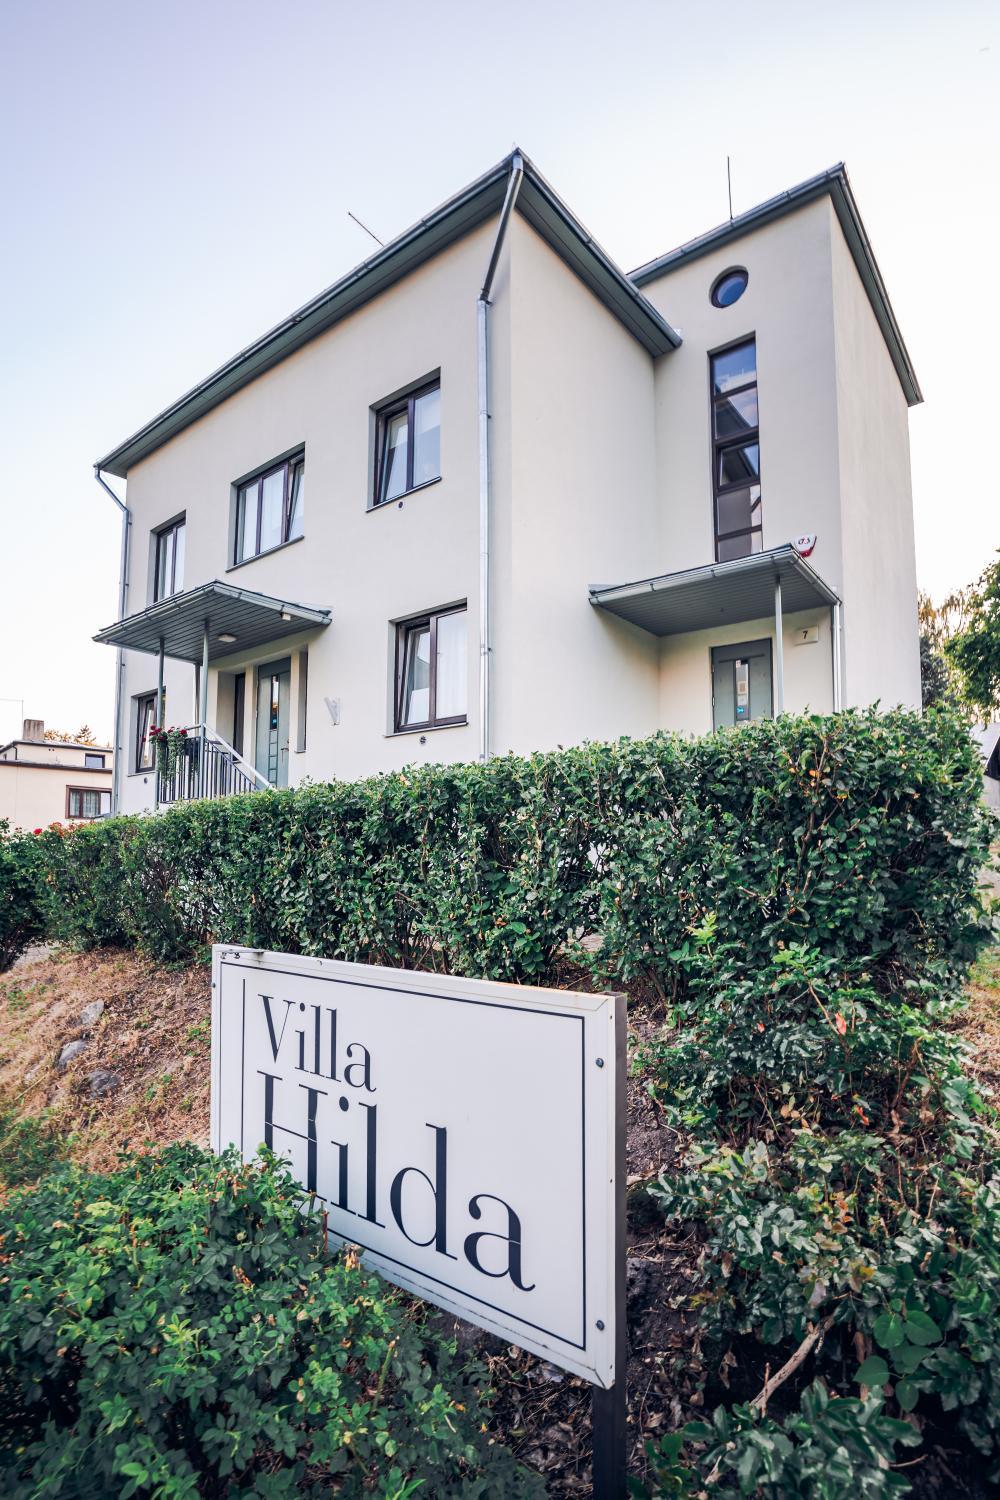 Hilda Villa, Viljandi